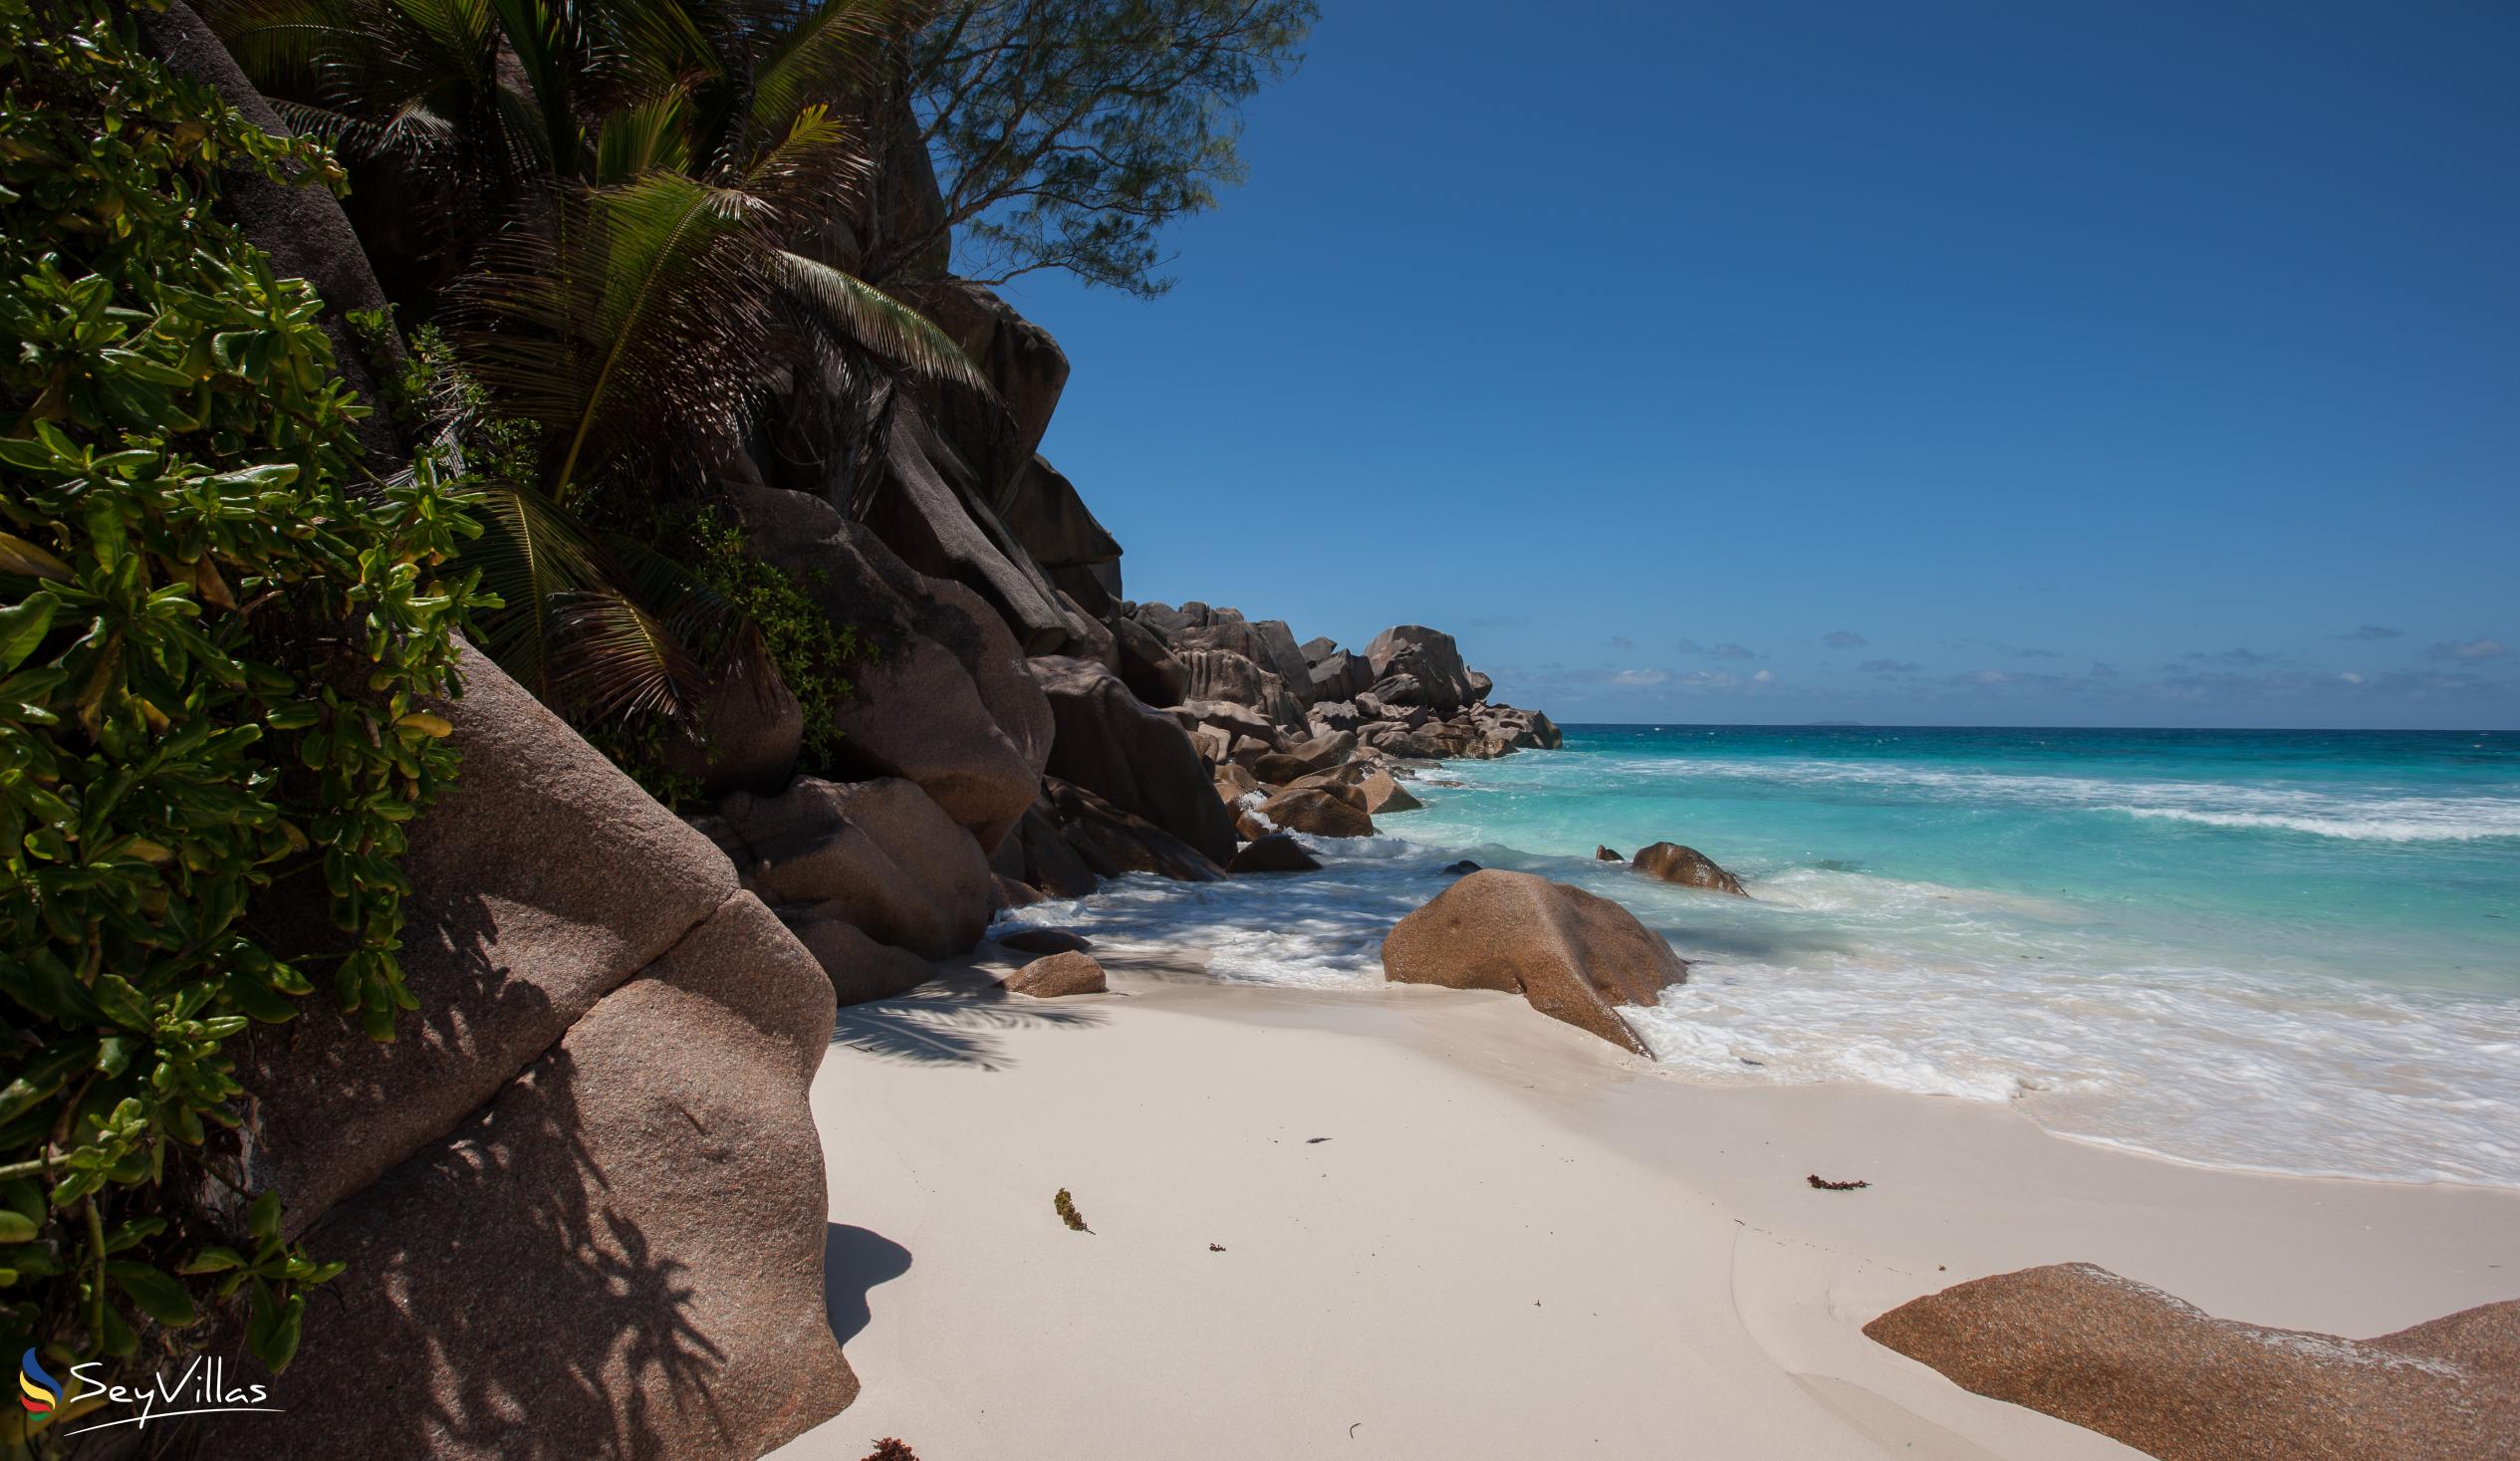 Foto 98: Casa de Leela - Spiagge - La Digue (Seychelles)